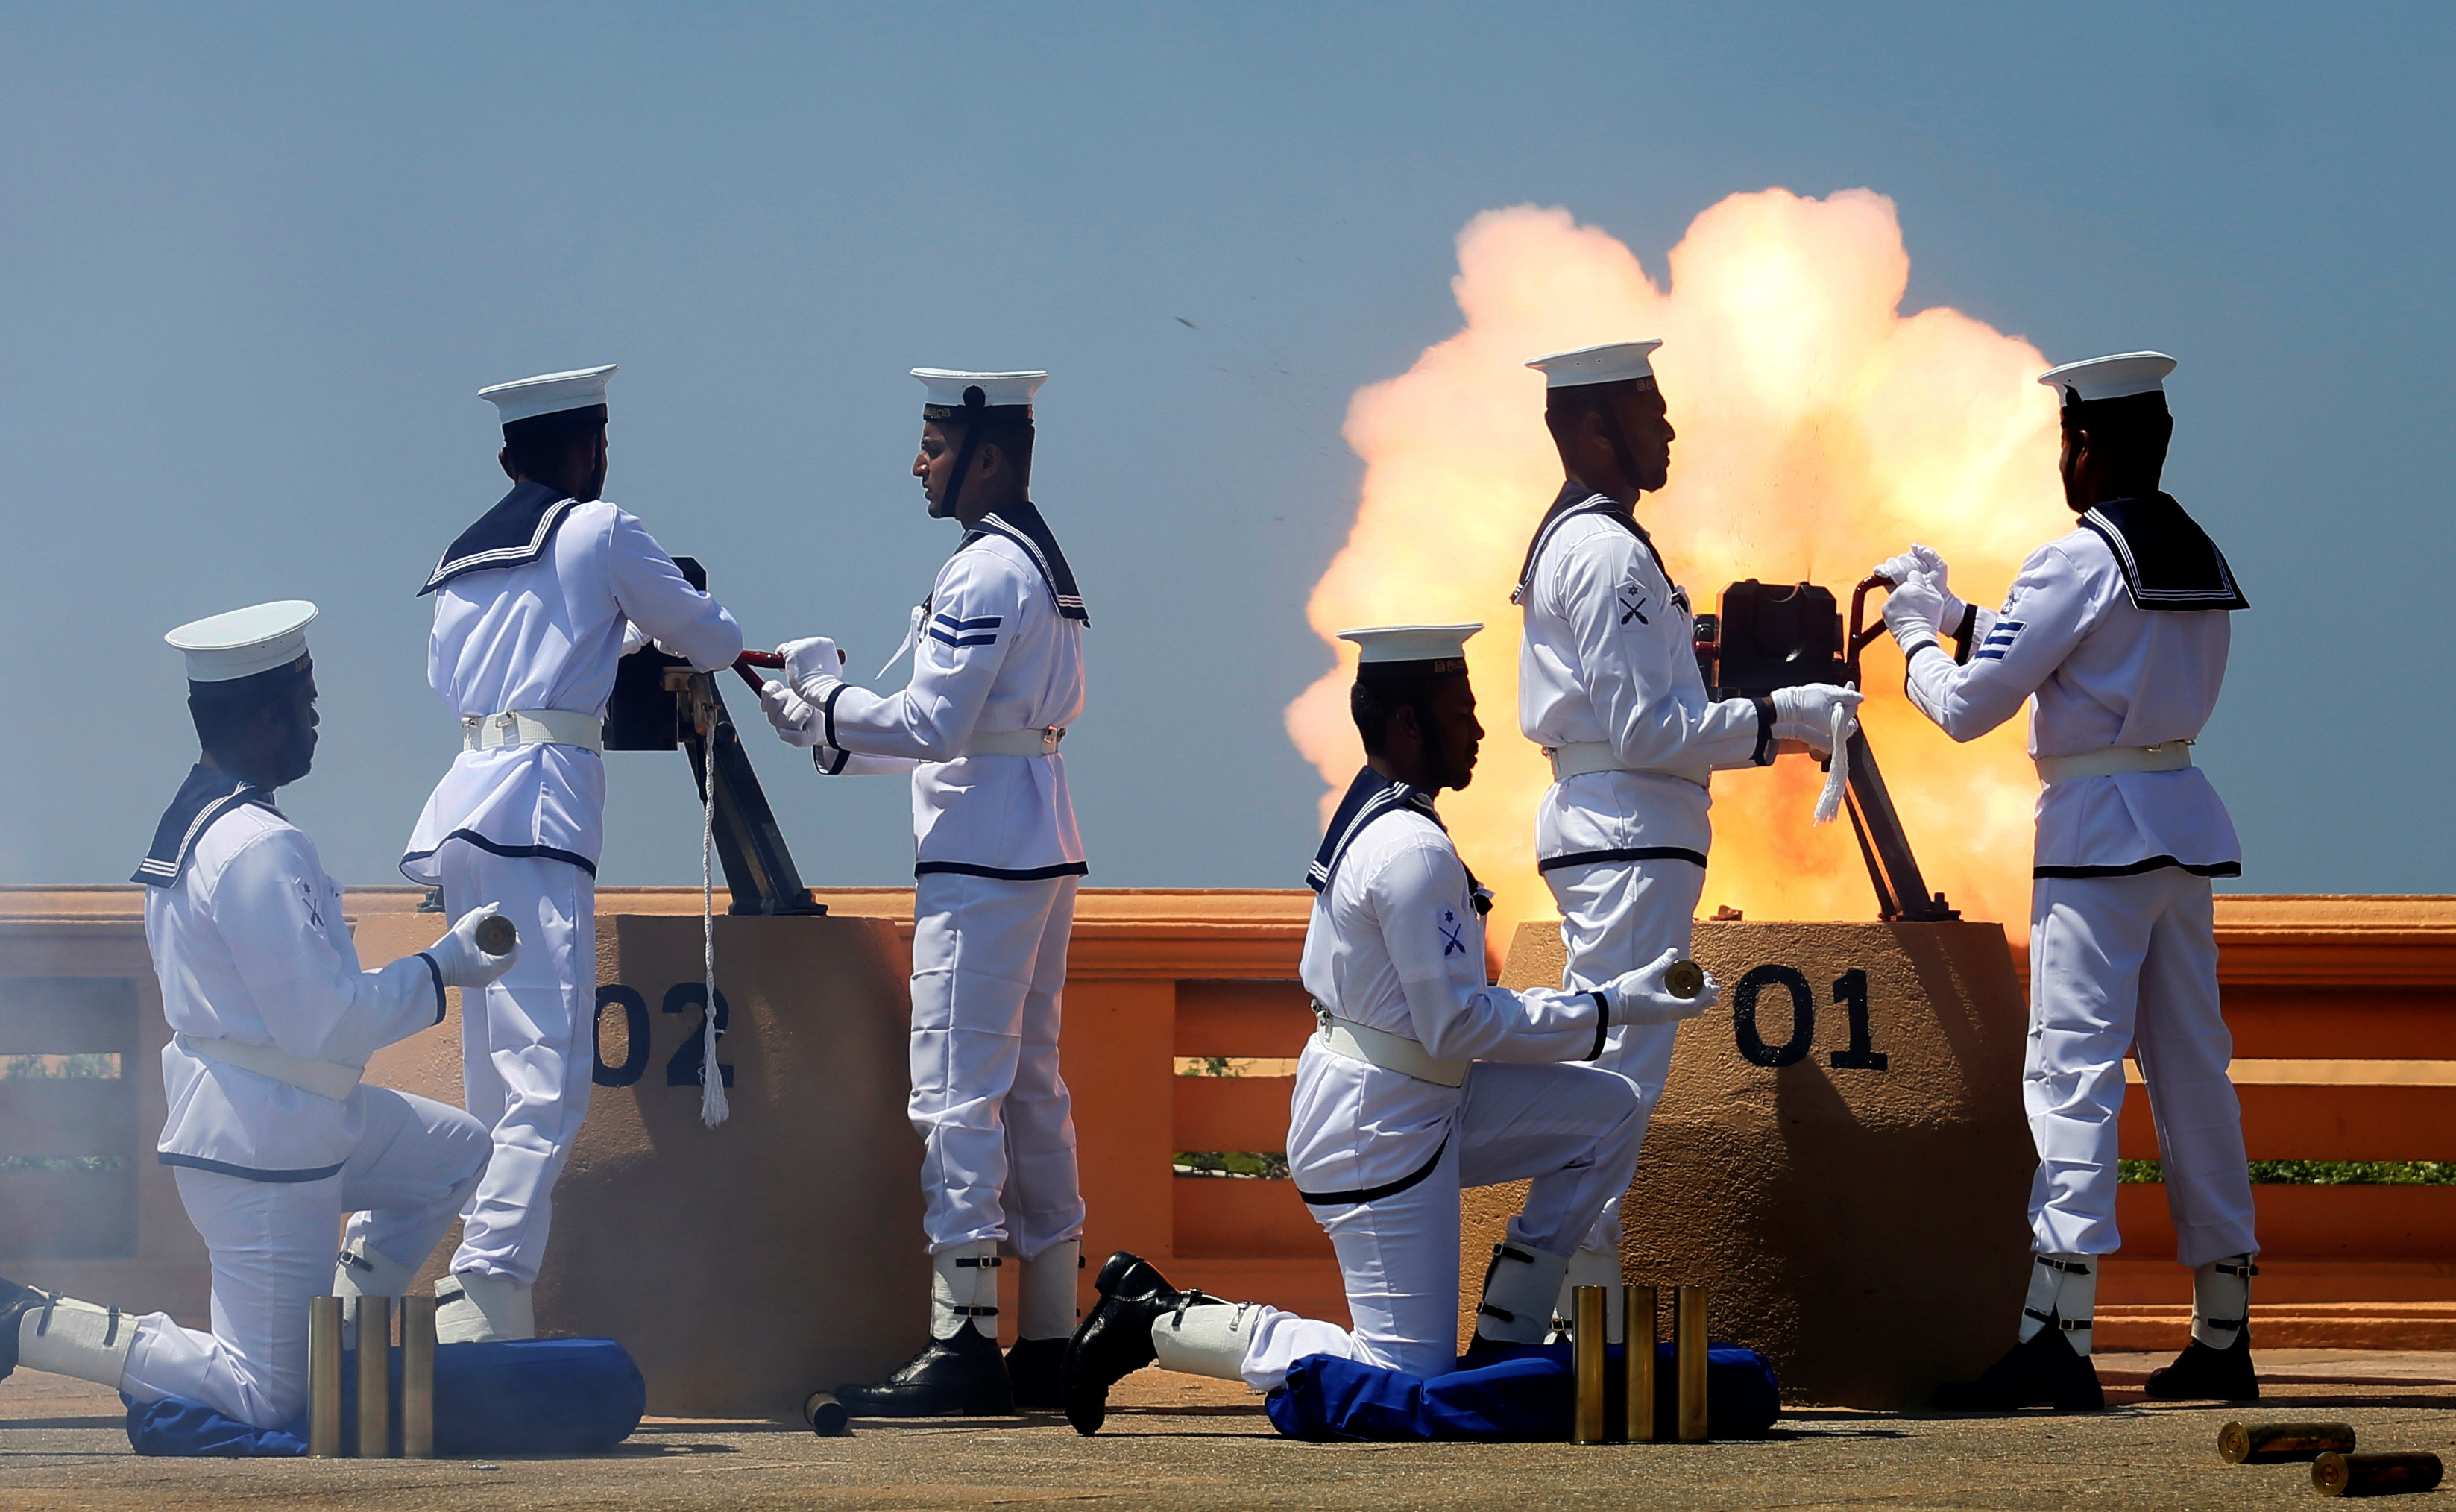 البحرية السريلانكية تطلق النيران فى احتفالات عيد الاستقلال الوطنى